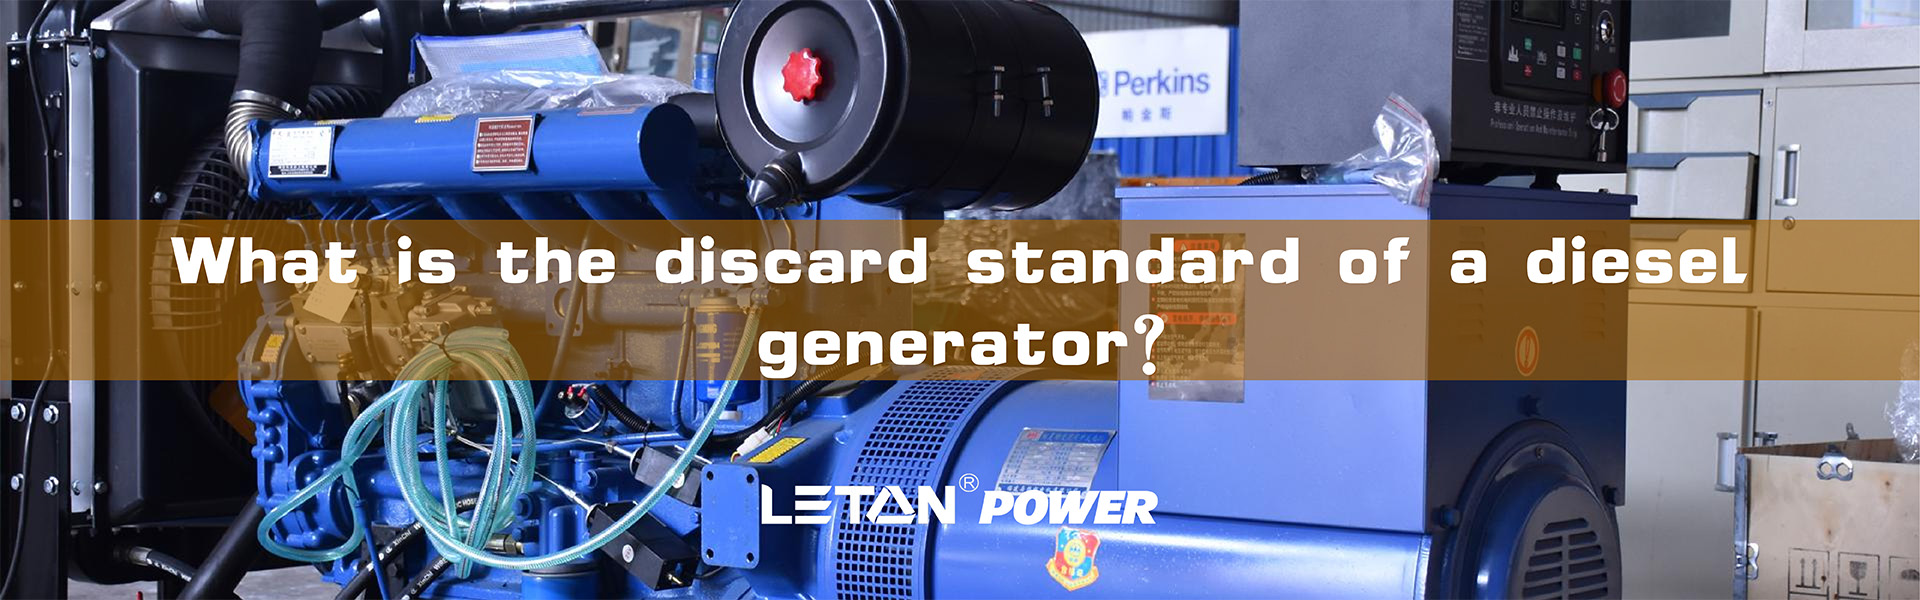 Koji je standard odbacivanja dizel generatora?